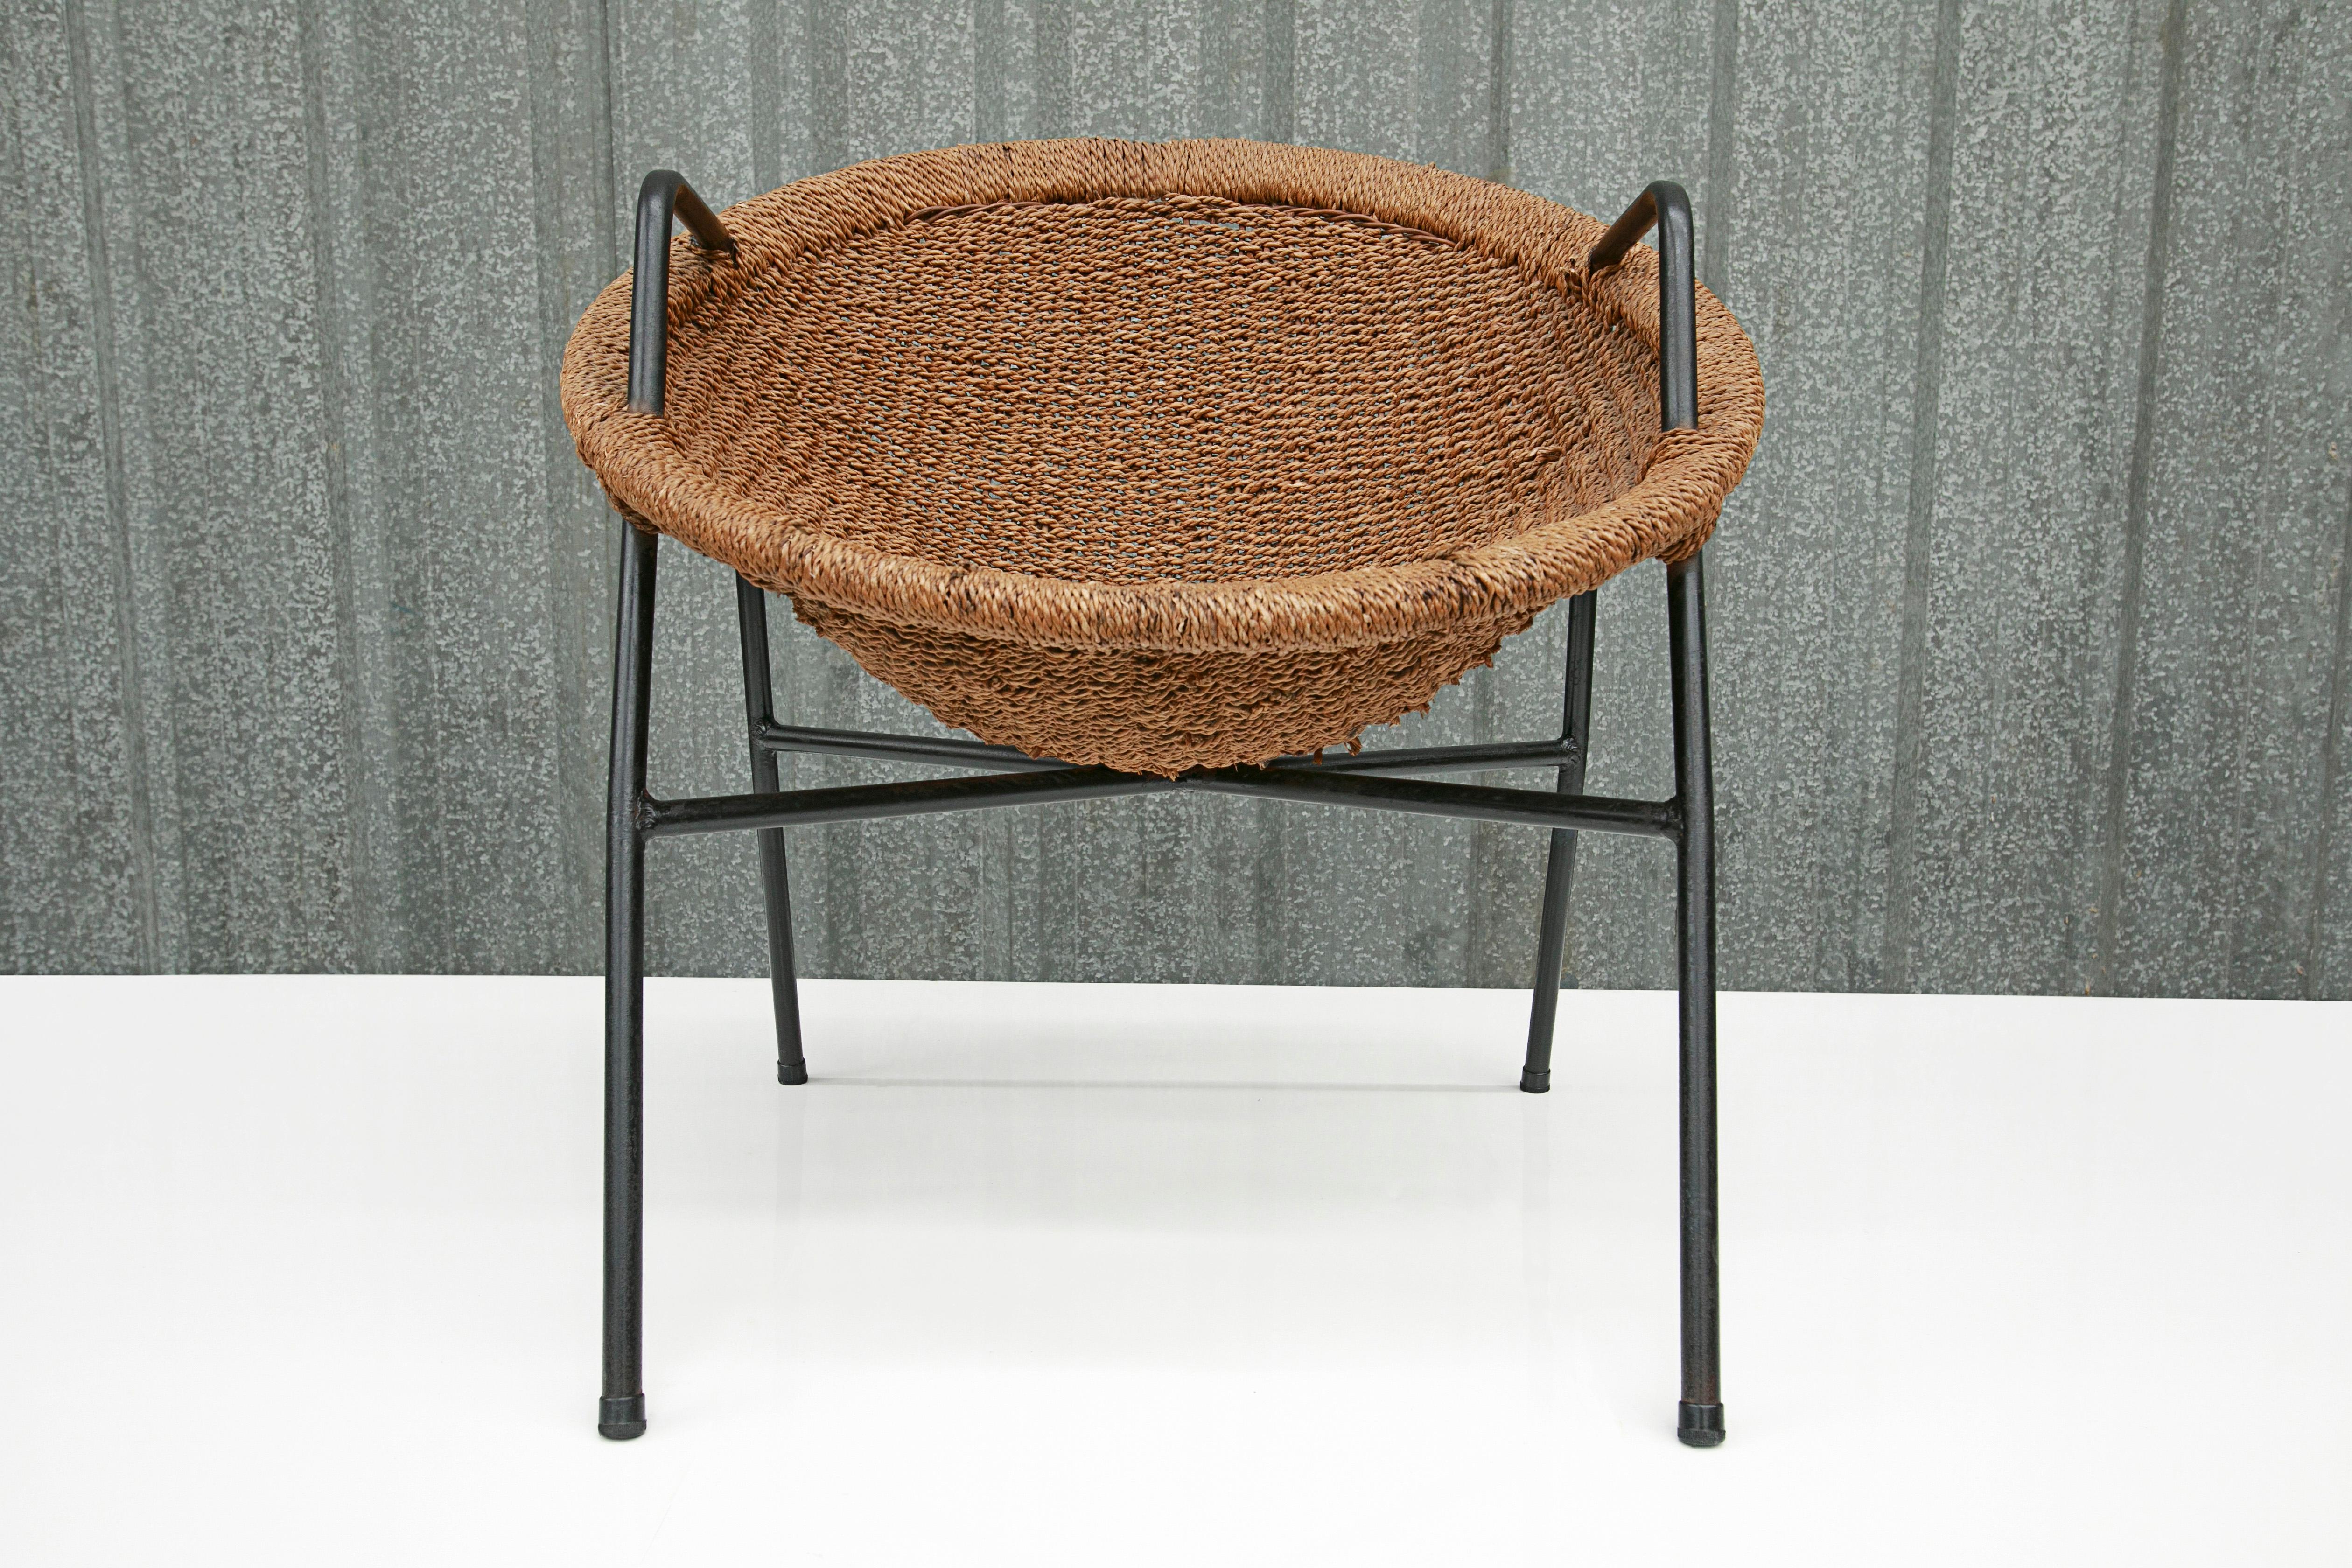 Cette chaise moderne brésilienne a été conçue par Carlo Hauner & Martin Eisler et est absolument magnifique. La structure est en fer et le siège est en rotin. Les pieds de la chaise sont très fins et l'assise est arrondie et inclinée vers l'arrière,